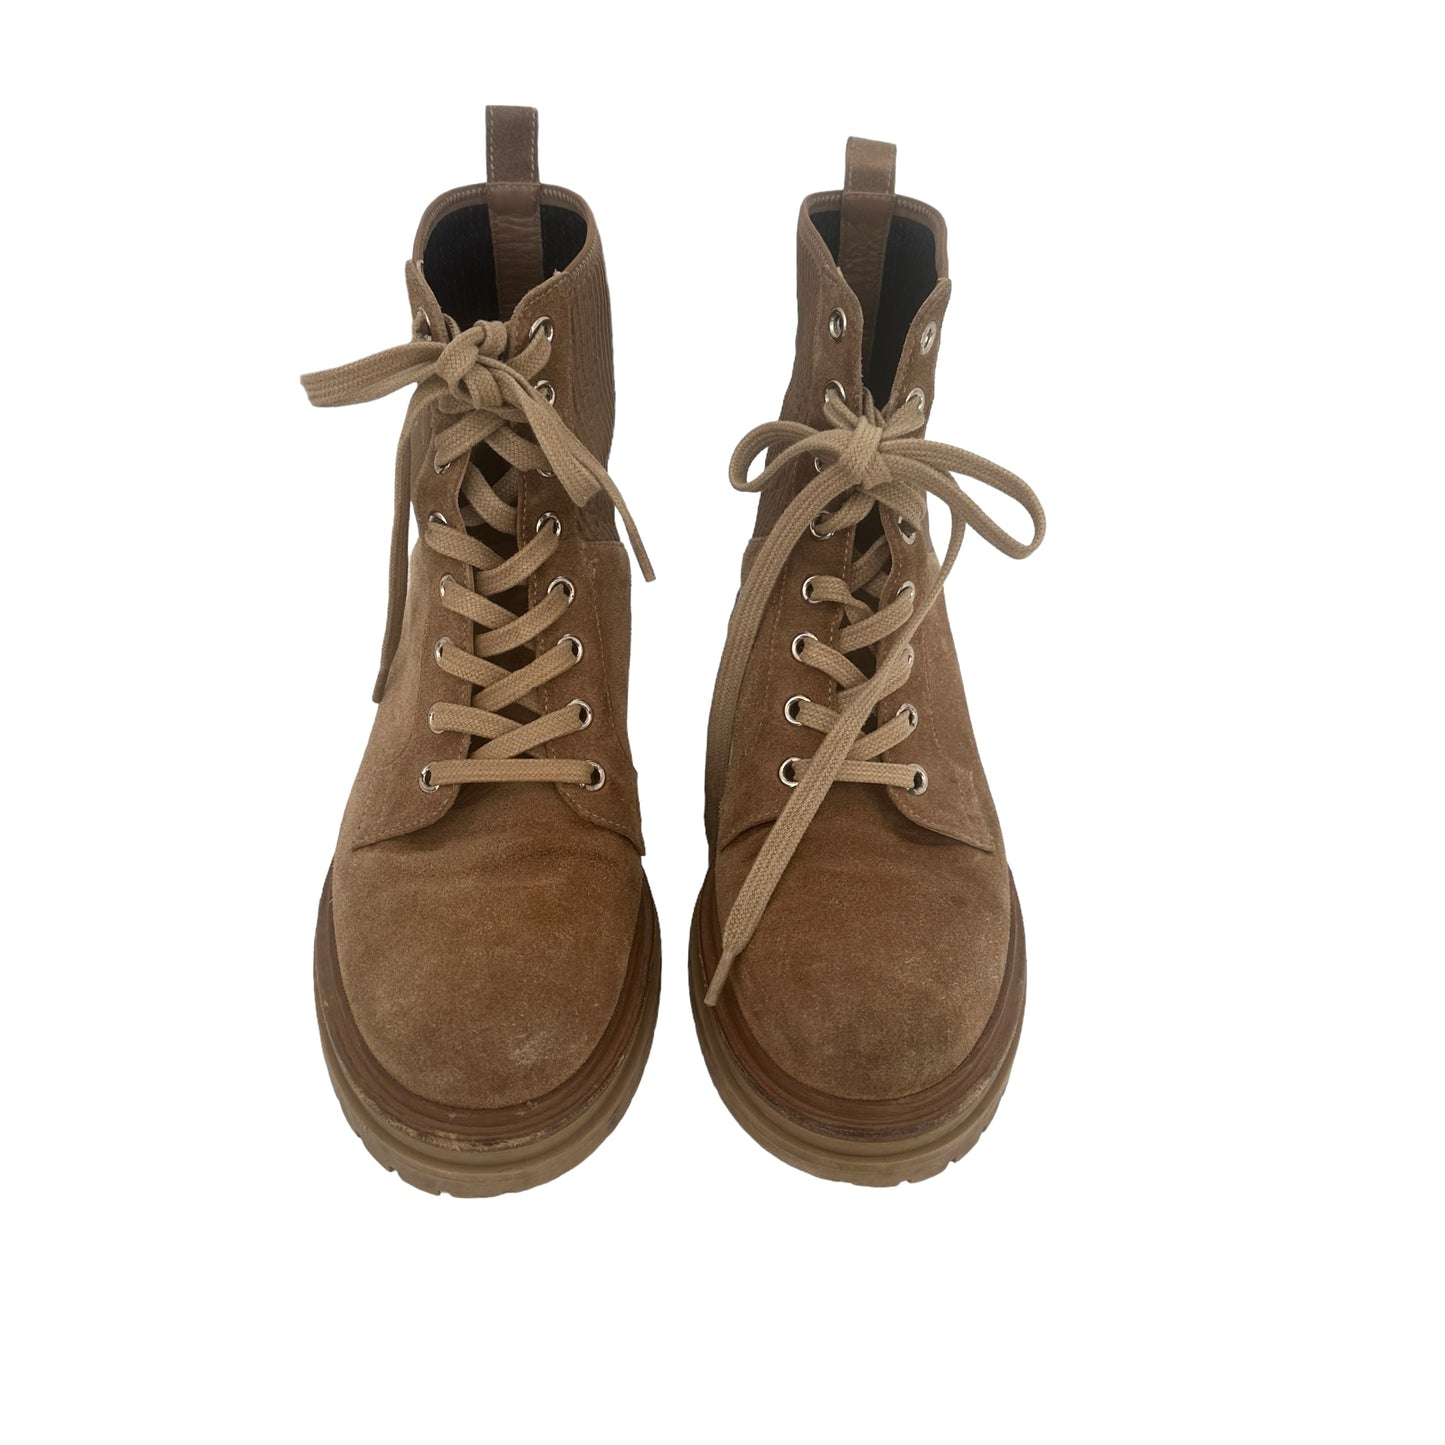 Brown Suede Combat Boots - 7.5